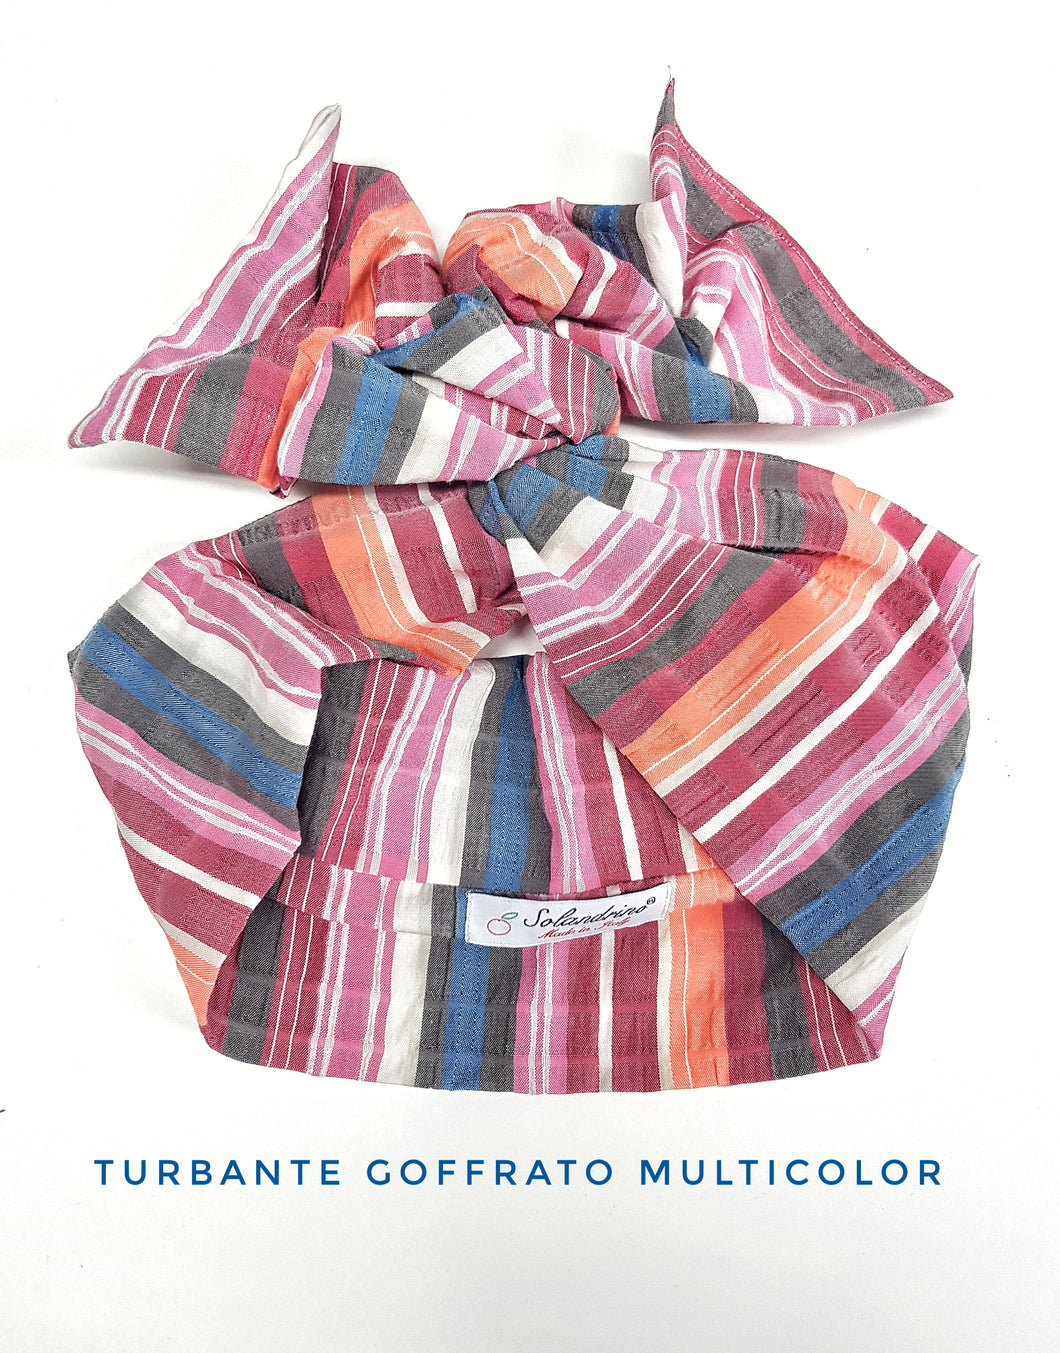 Turbante fasciato multicolor goffrato Fashion fascia capelli in cotone design fascia capelli made in Italy striped